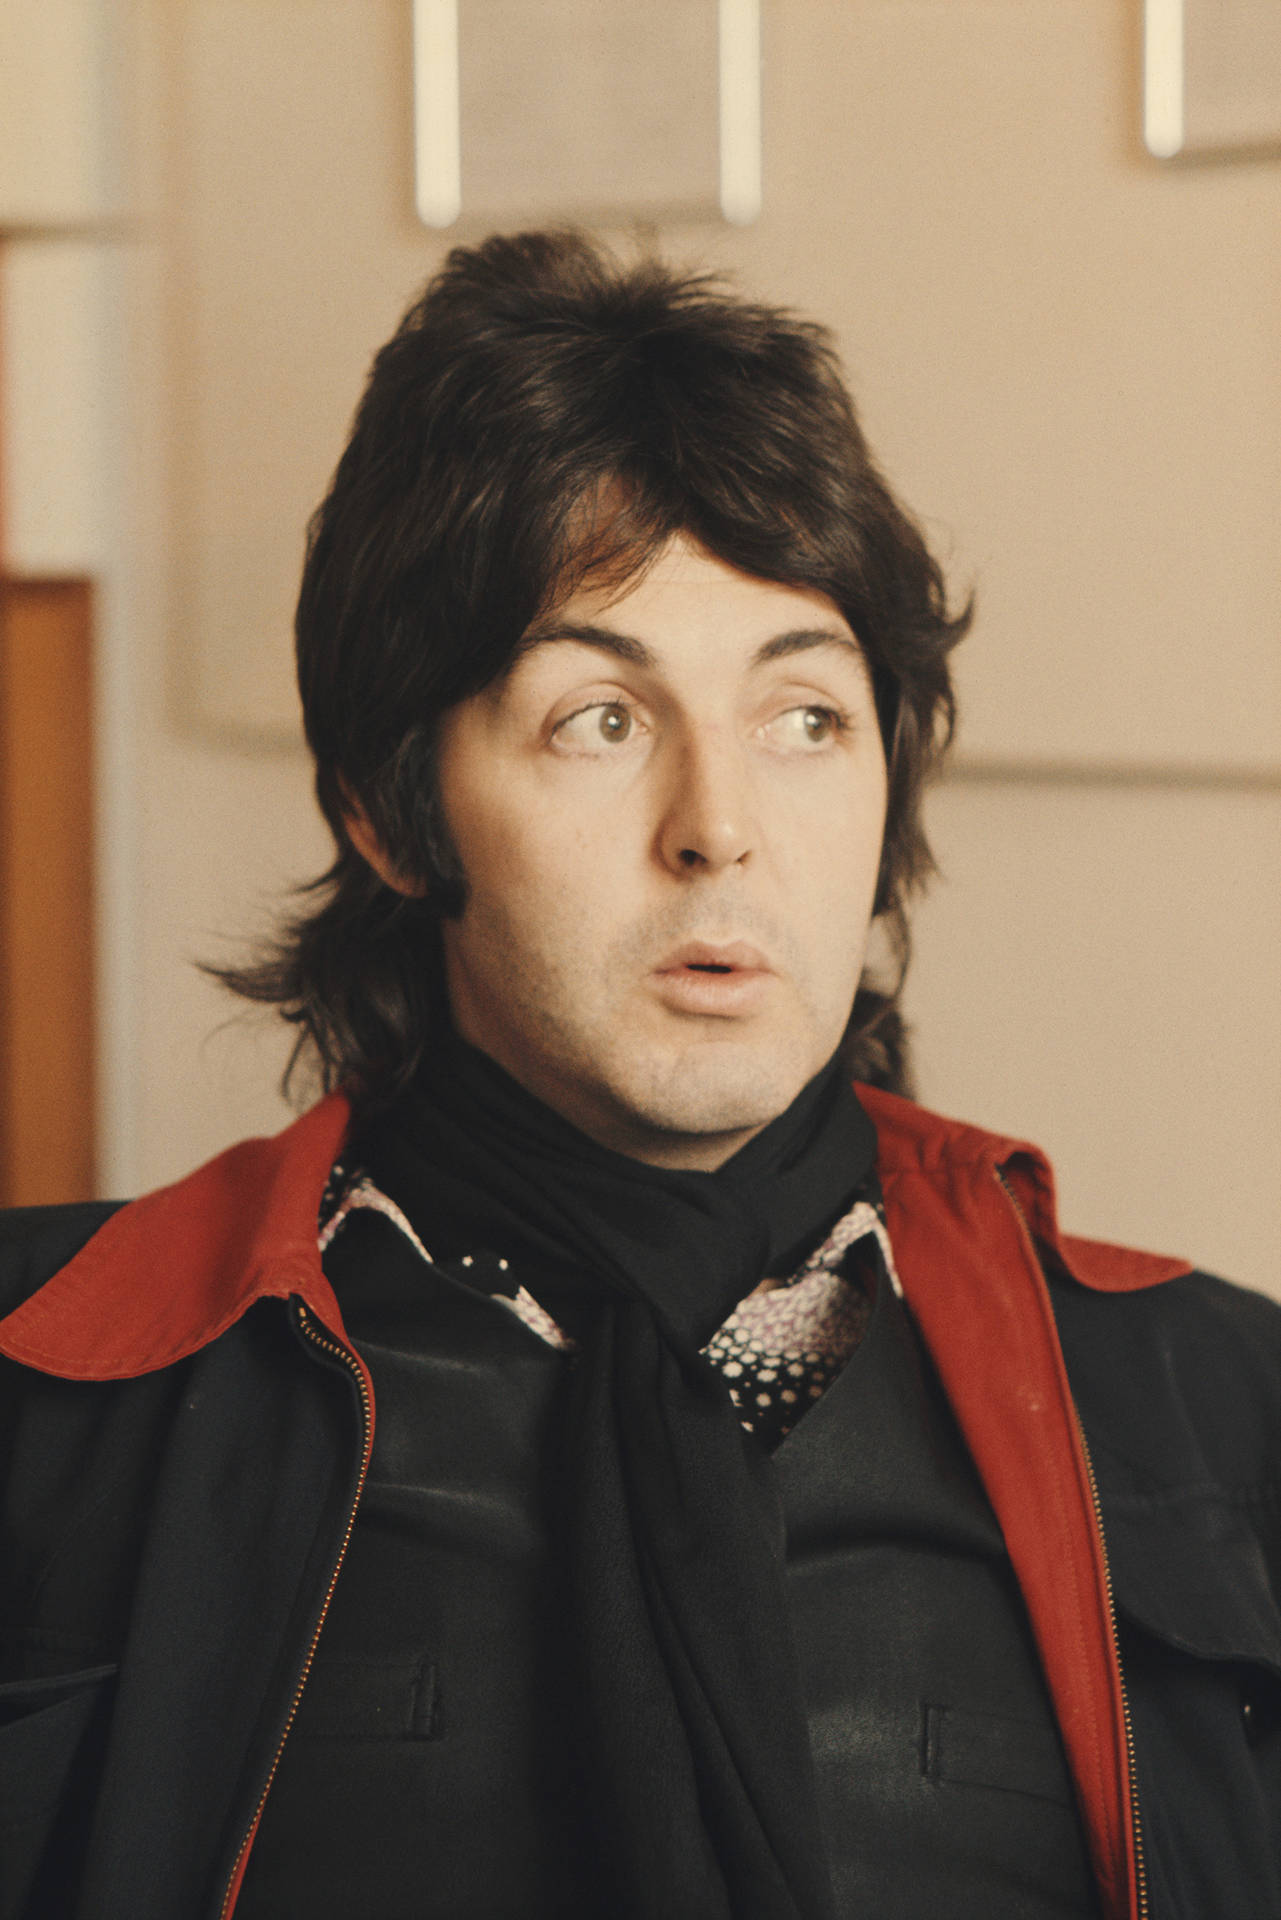 Paul McCartney Jacket Looking Surprised Wallpaper